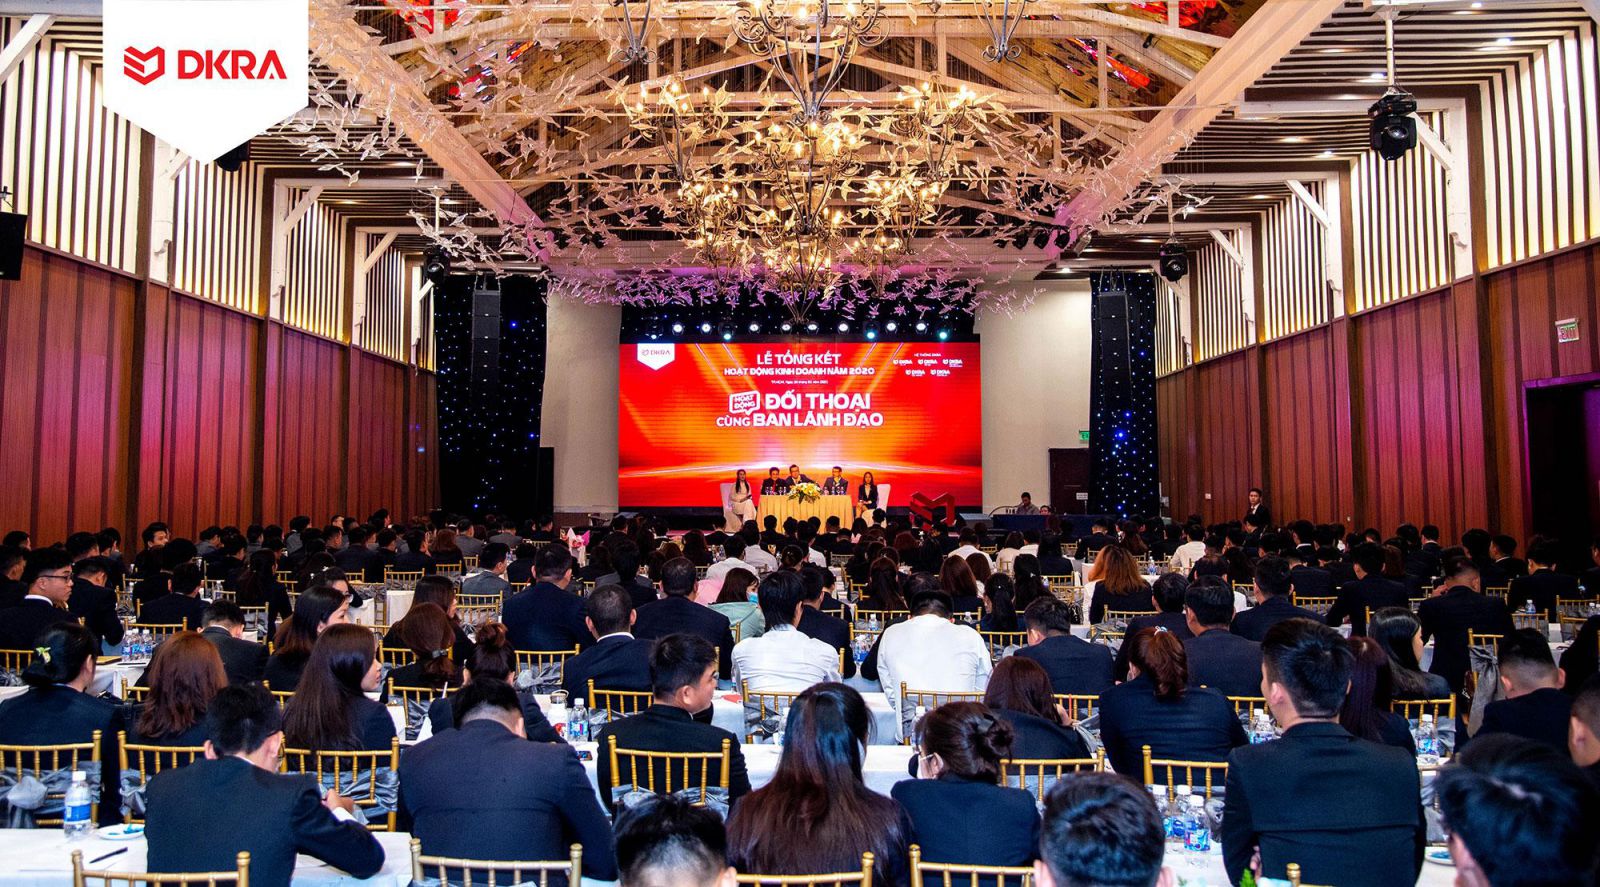 Anh Trần Hiếu – Phó tổng giám đốc khối tiếp thị và kinh doanh DKRA Vietnam vinh danh các trưởng phòng kinh doanh xuất sắc và tiêu biểu cấp hệ thống năm 2020